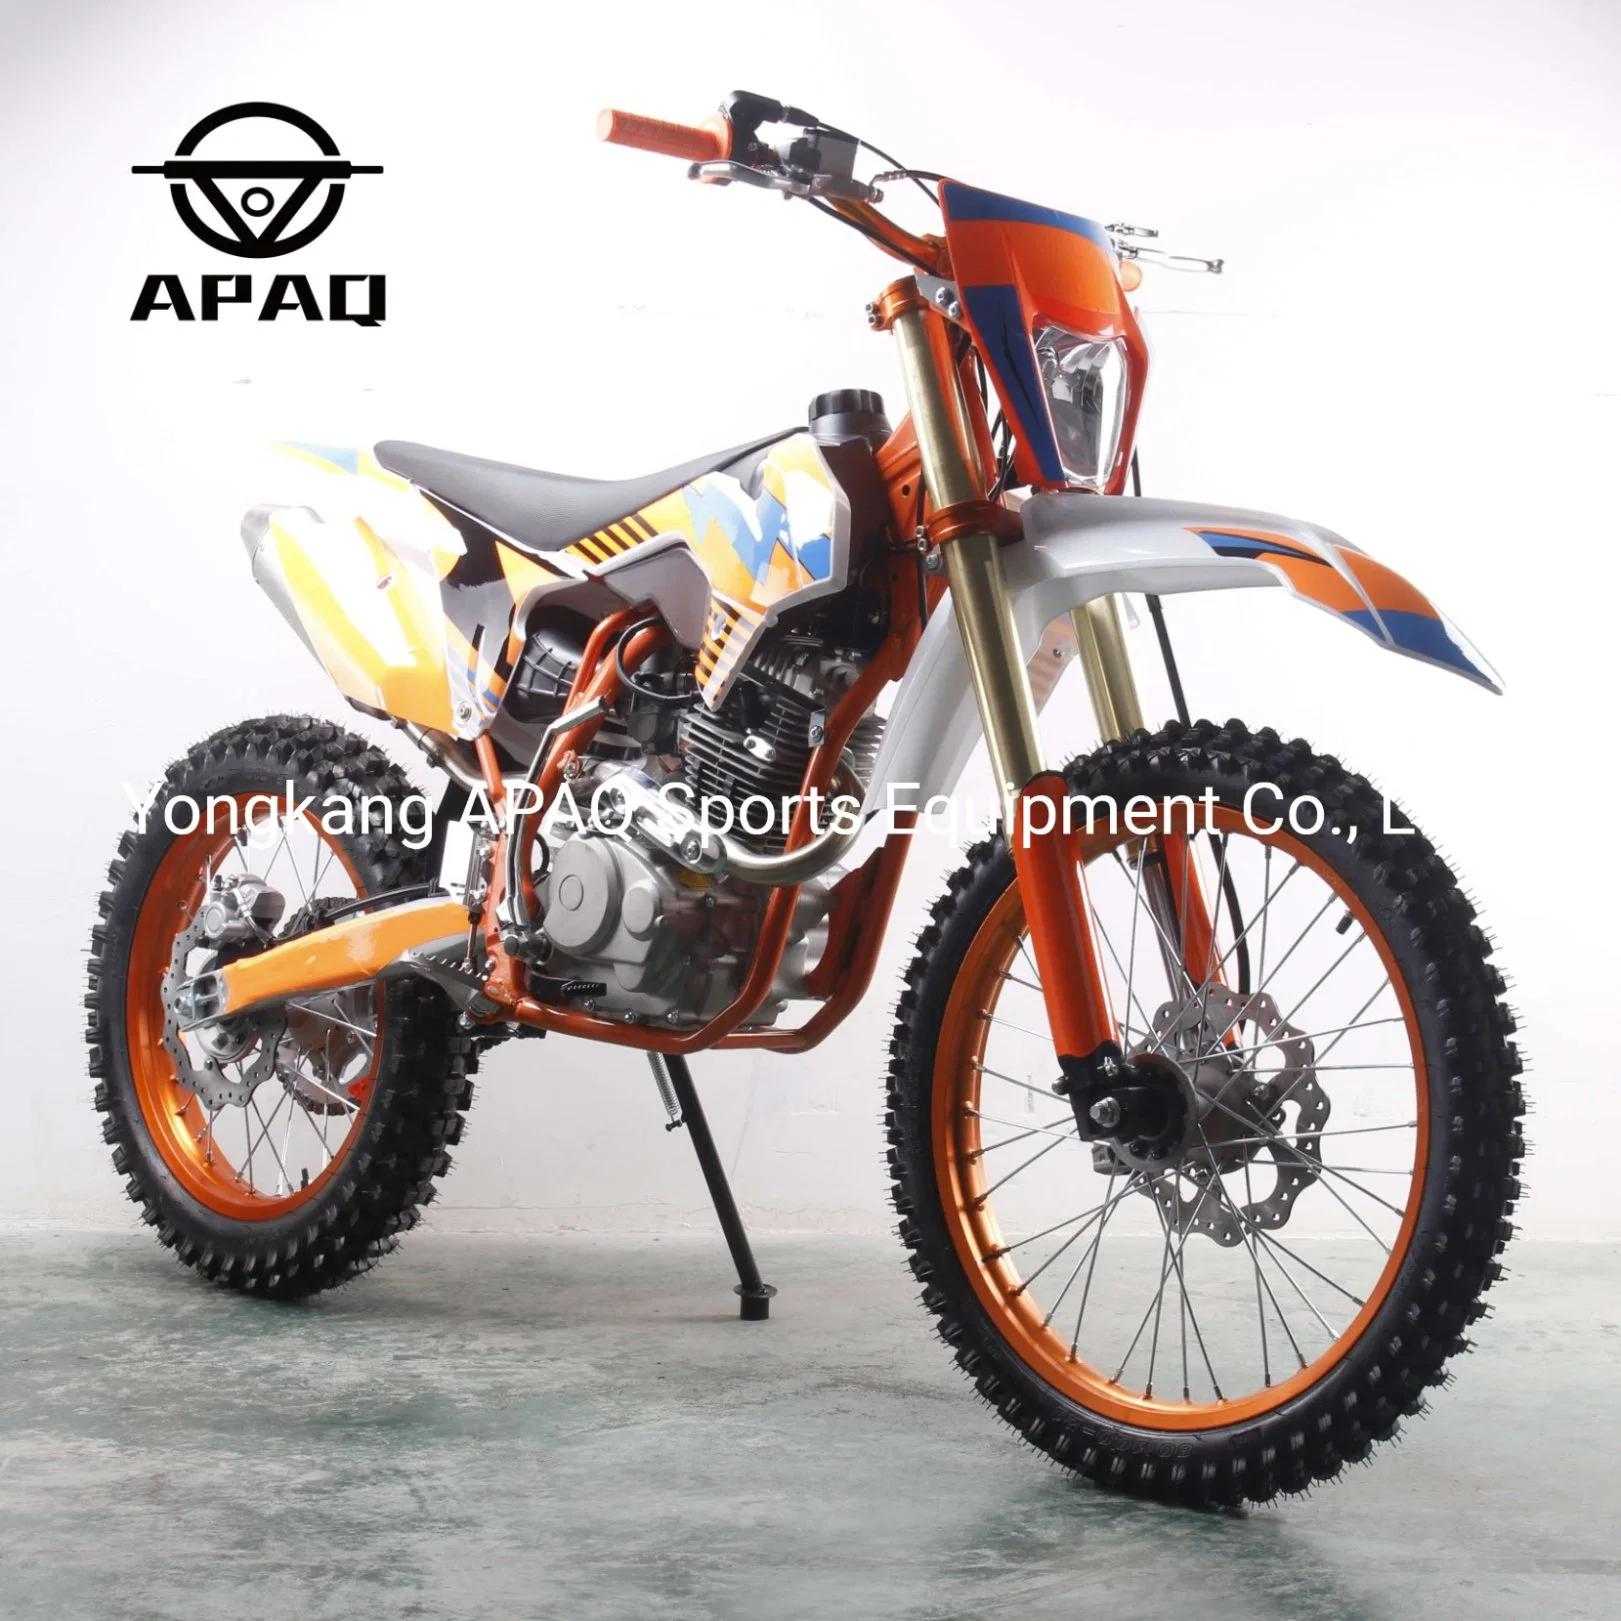 Apq 300cc Dirt Bike 250cc Pit Bike 200cc Dirt Bike